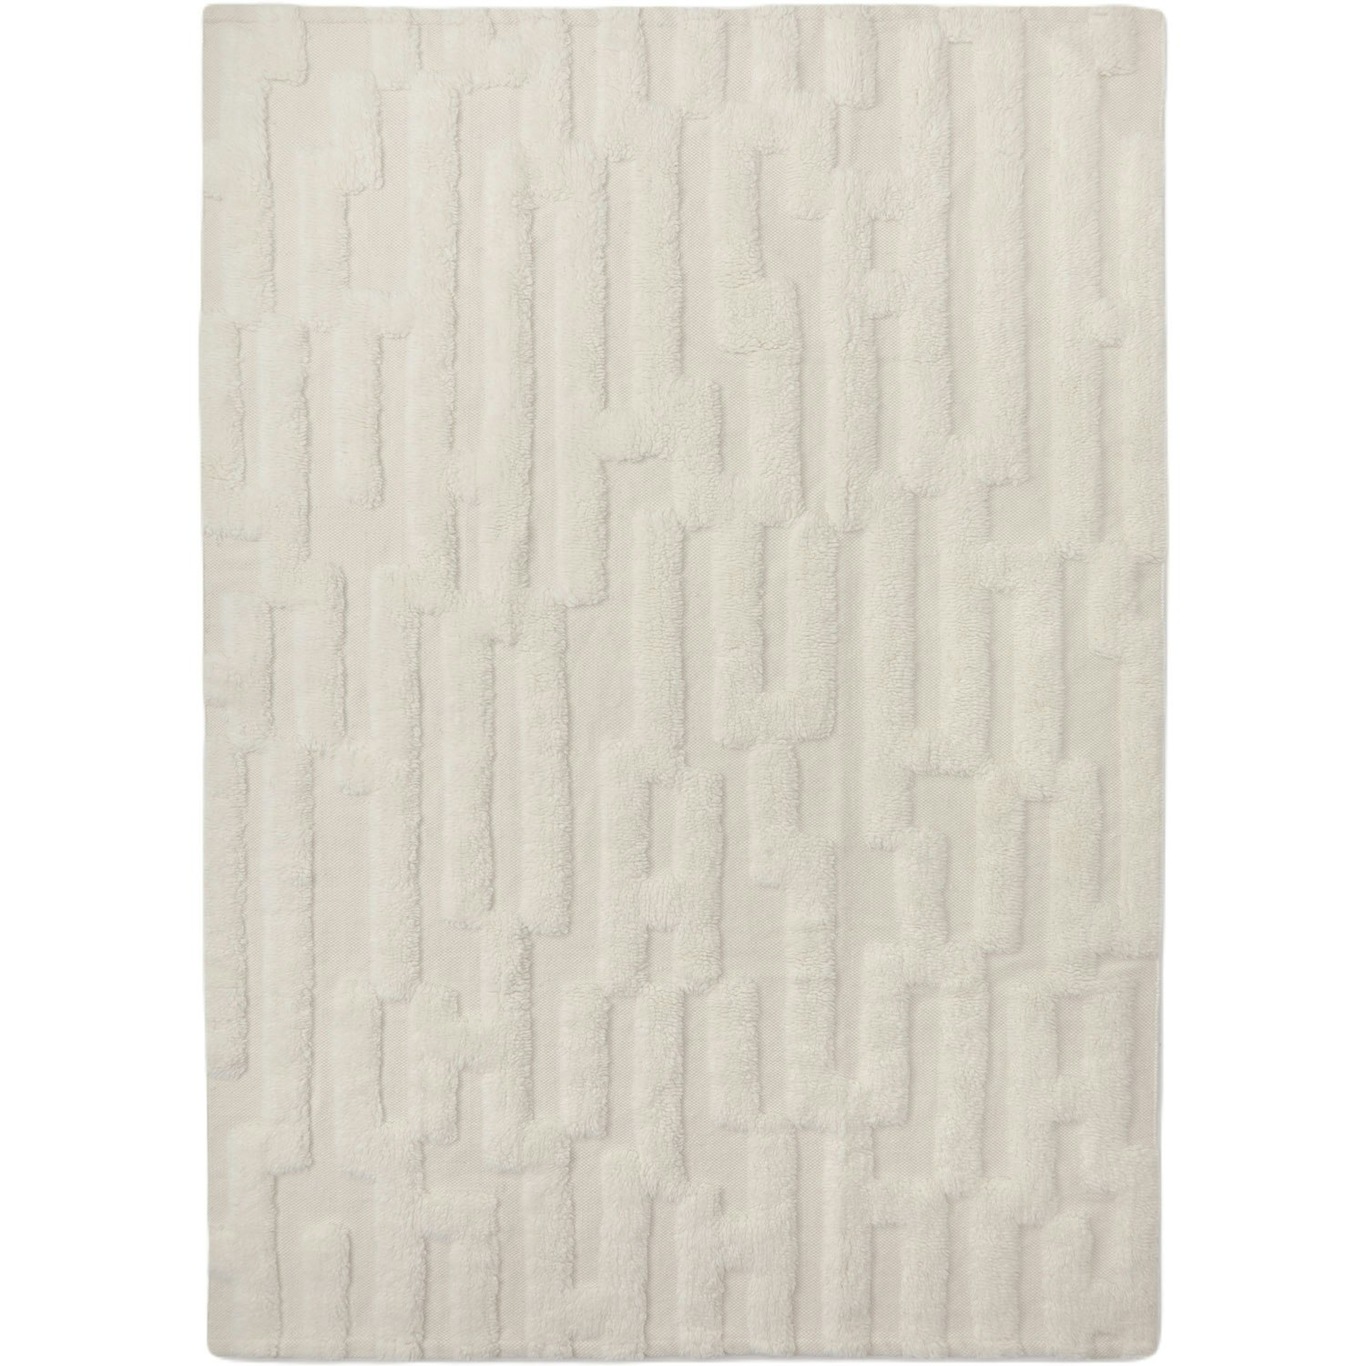 Bielke Ullteppe 160x230 cm, Off-white